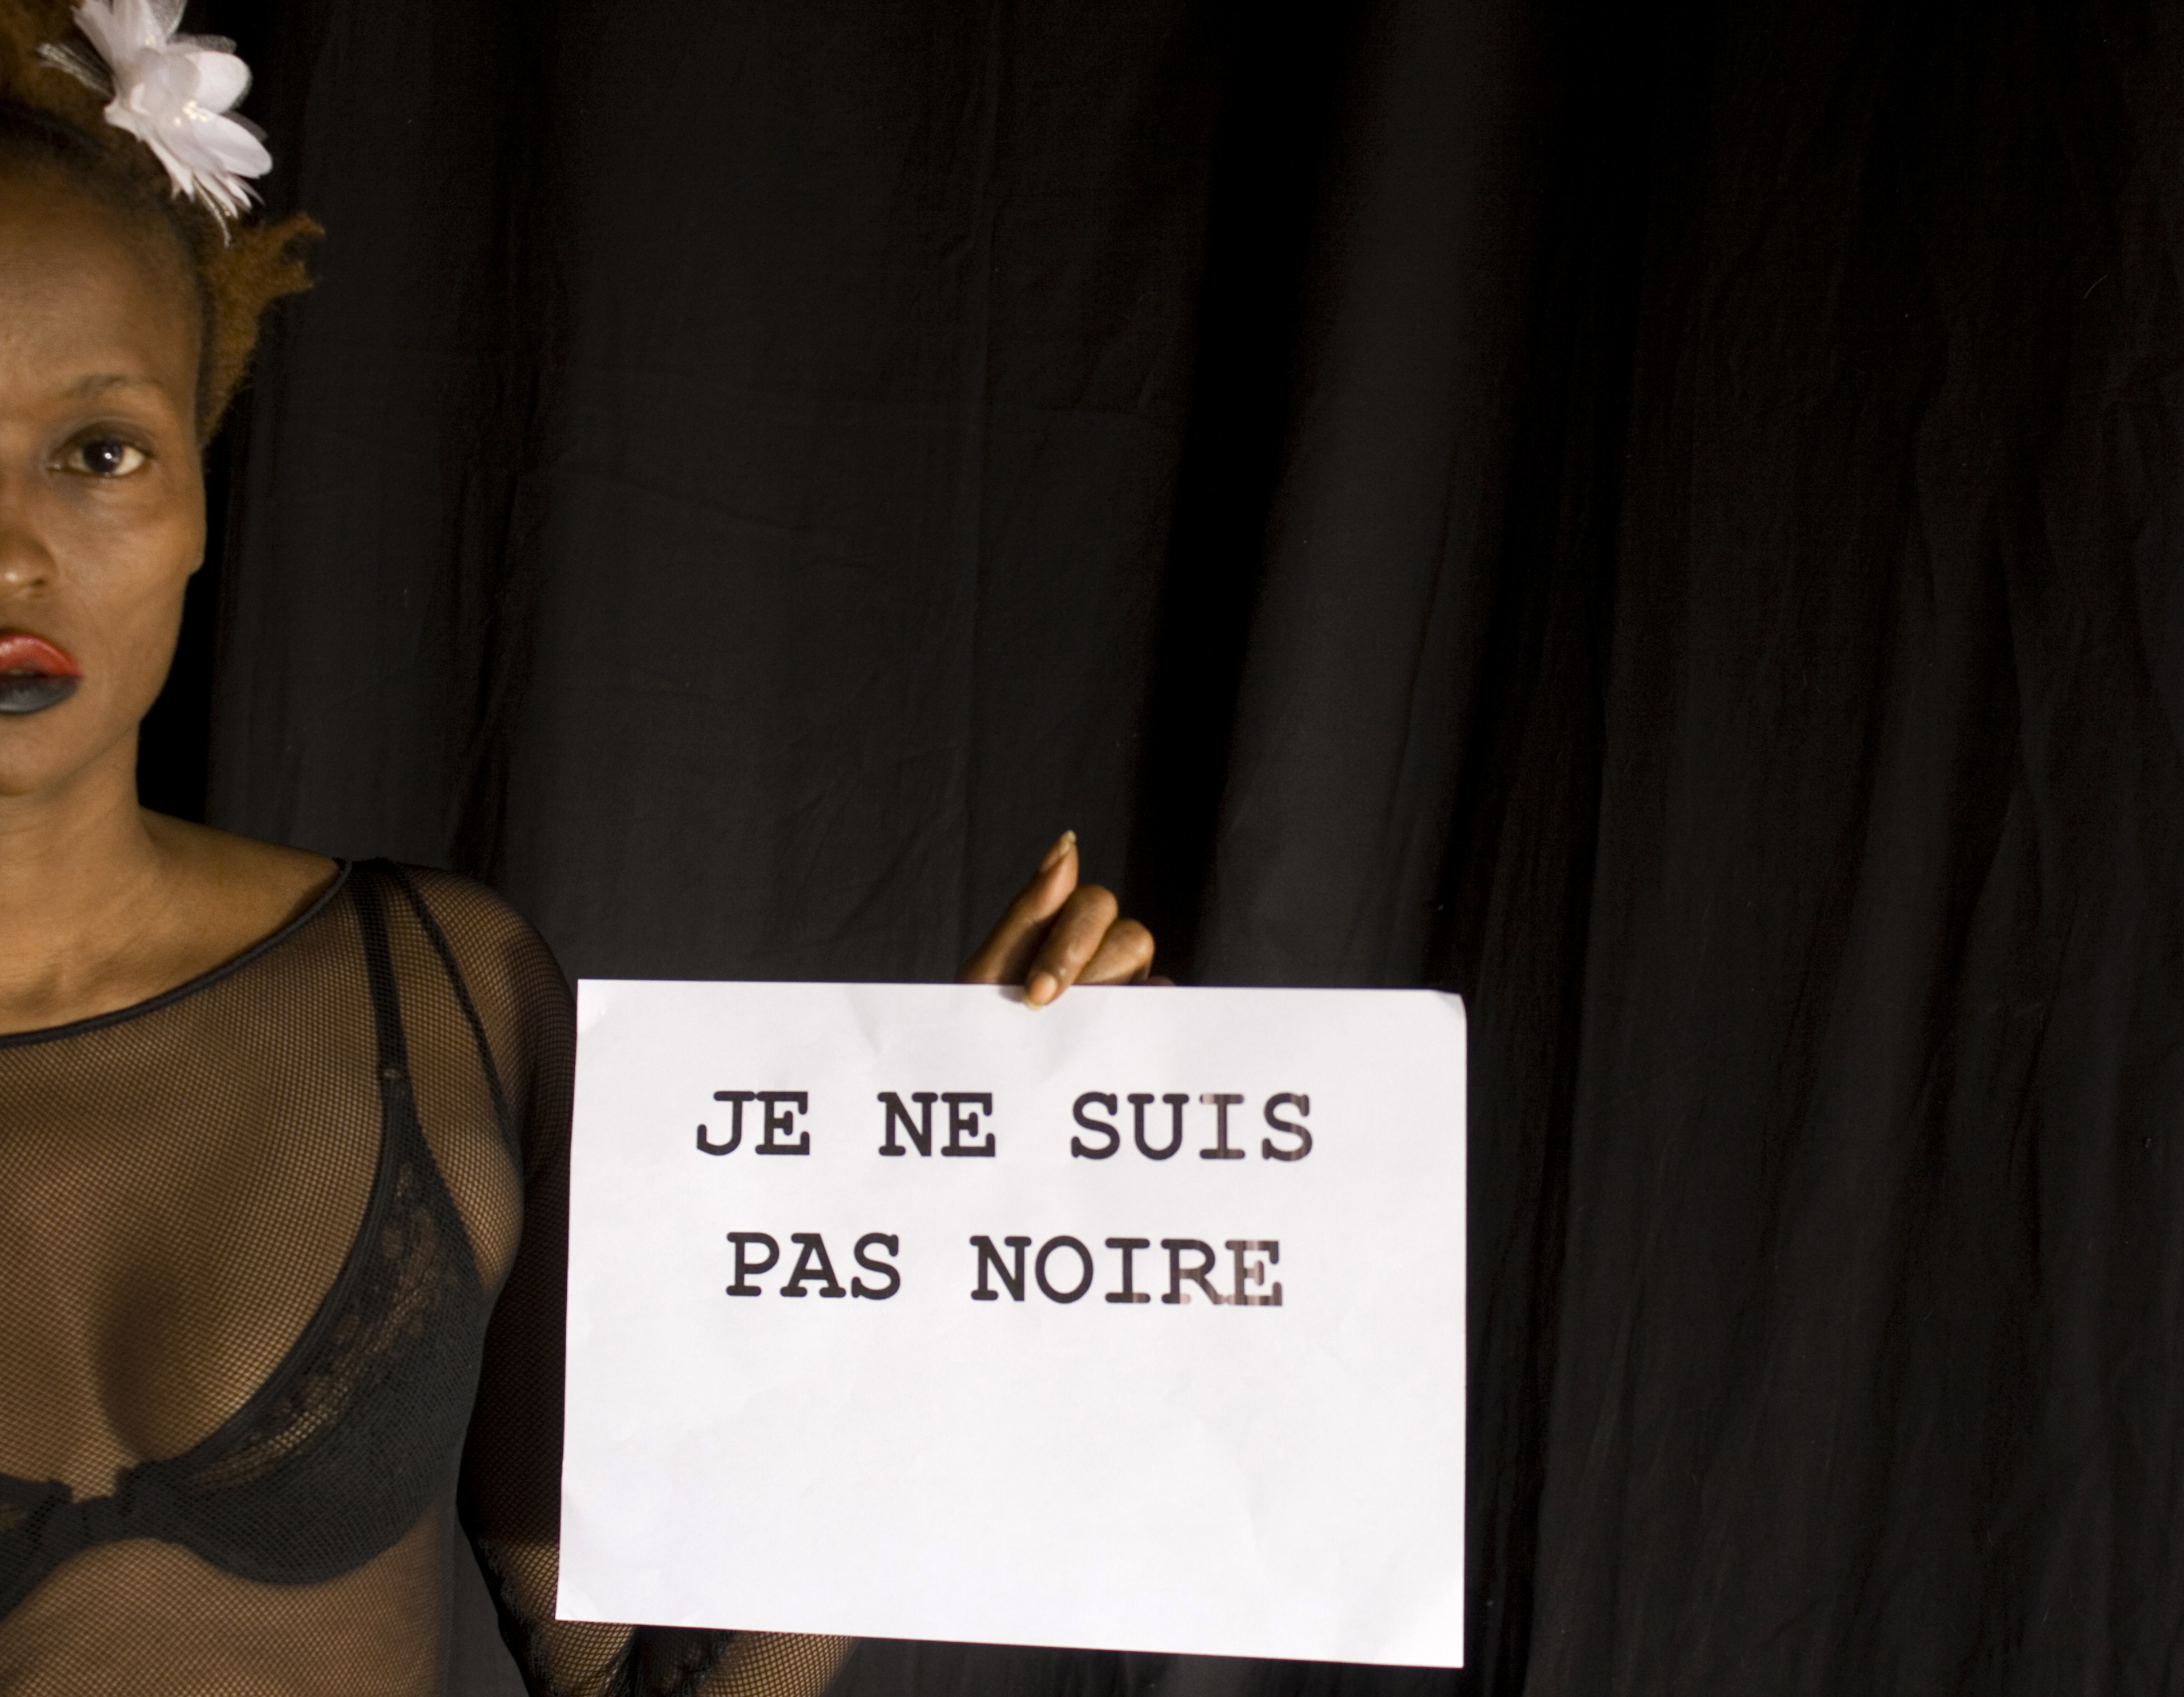 Frau mit dunkler Hautfarbe hält Schriftzug auf französisch "Je ne suis pas noire"